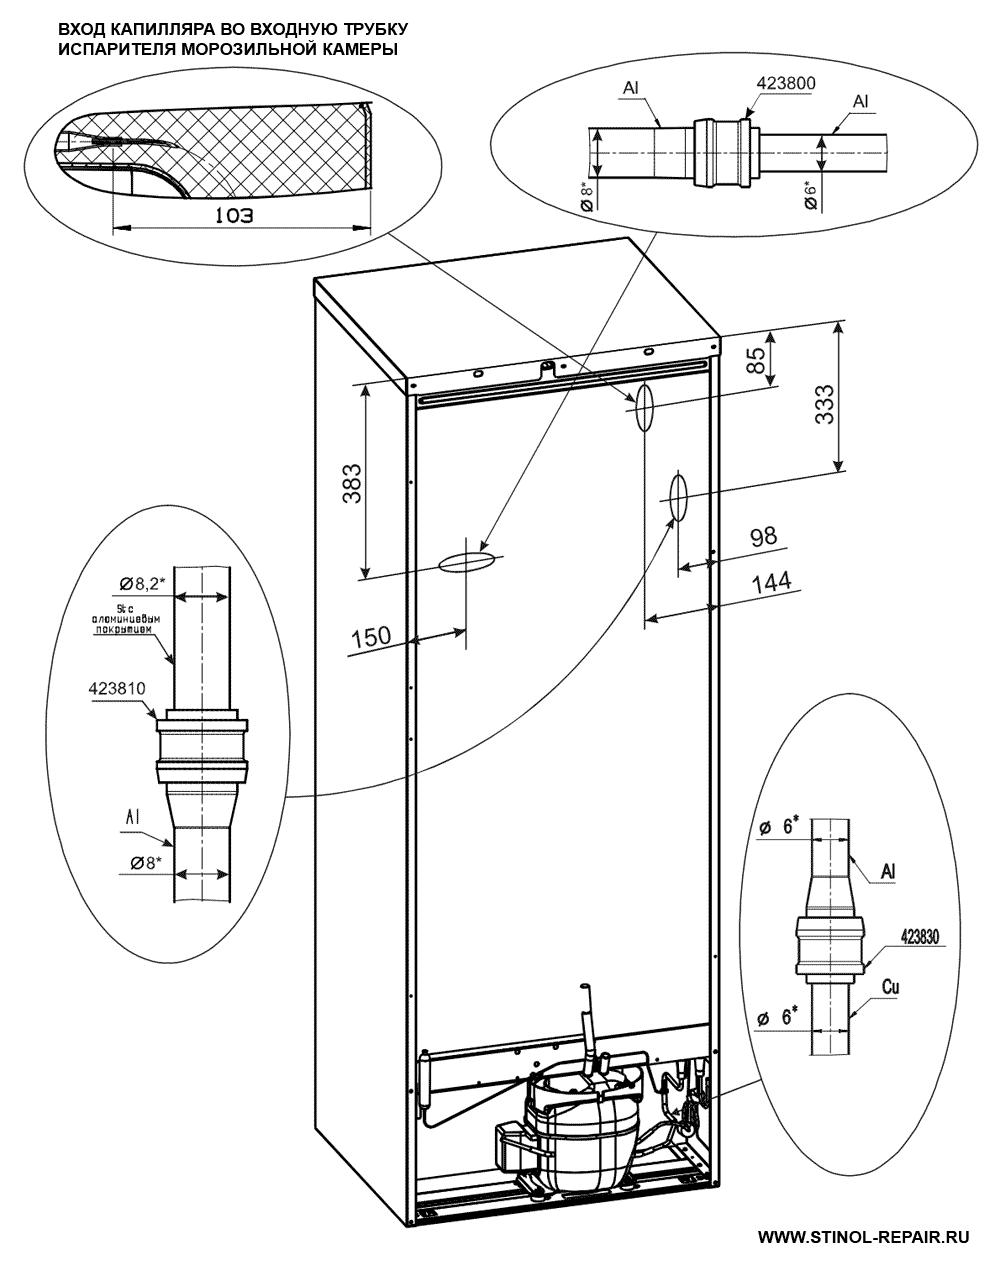 Расположение локринговых соединений холодильника Стинол-232Q - второй вариант.